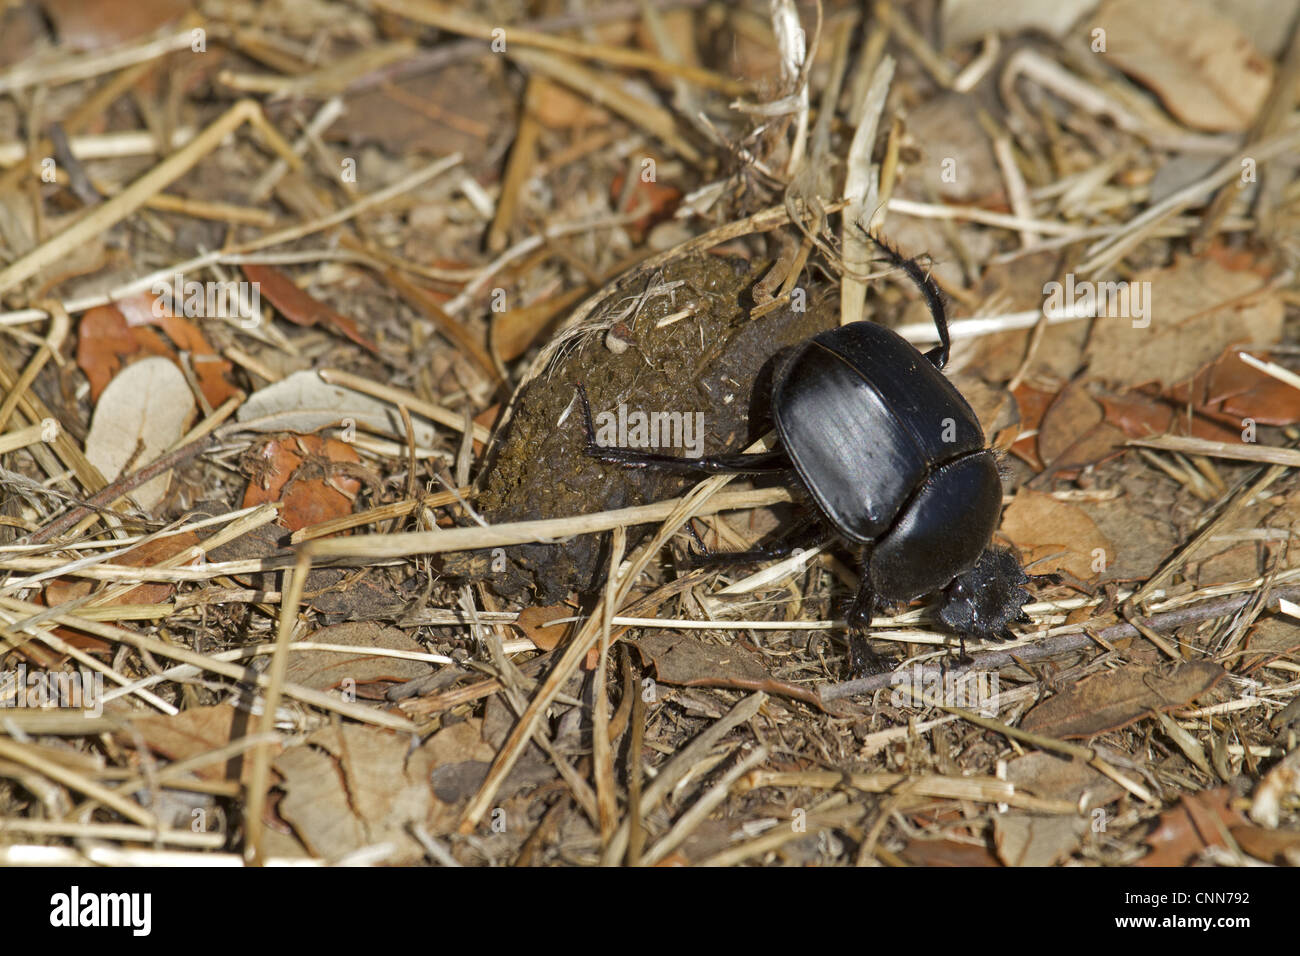 Heiligen Skarabäus-Käfer (Scarabaeus Sacer) Erwachsenen, rollenden Dung Ball unter Laubstreu, Extremadura, Spanien, august Stockfoto